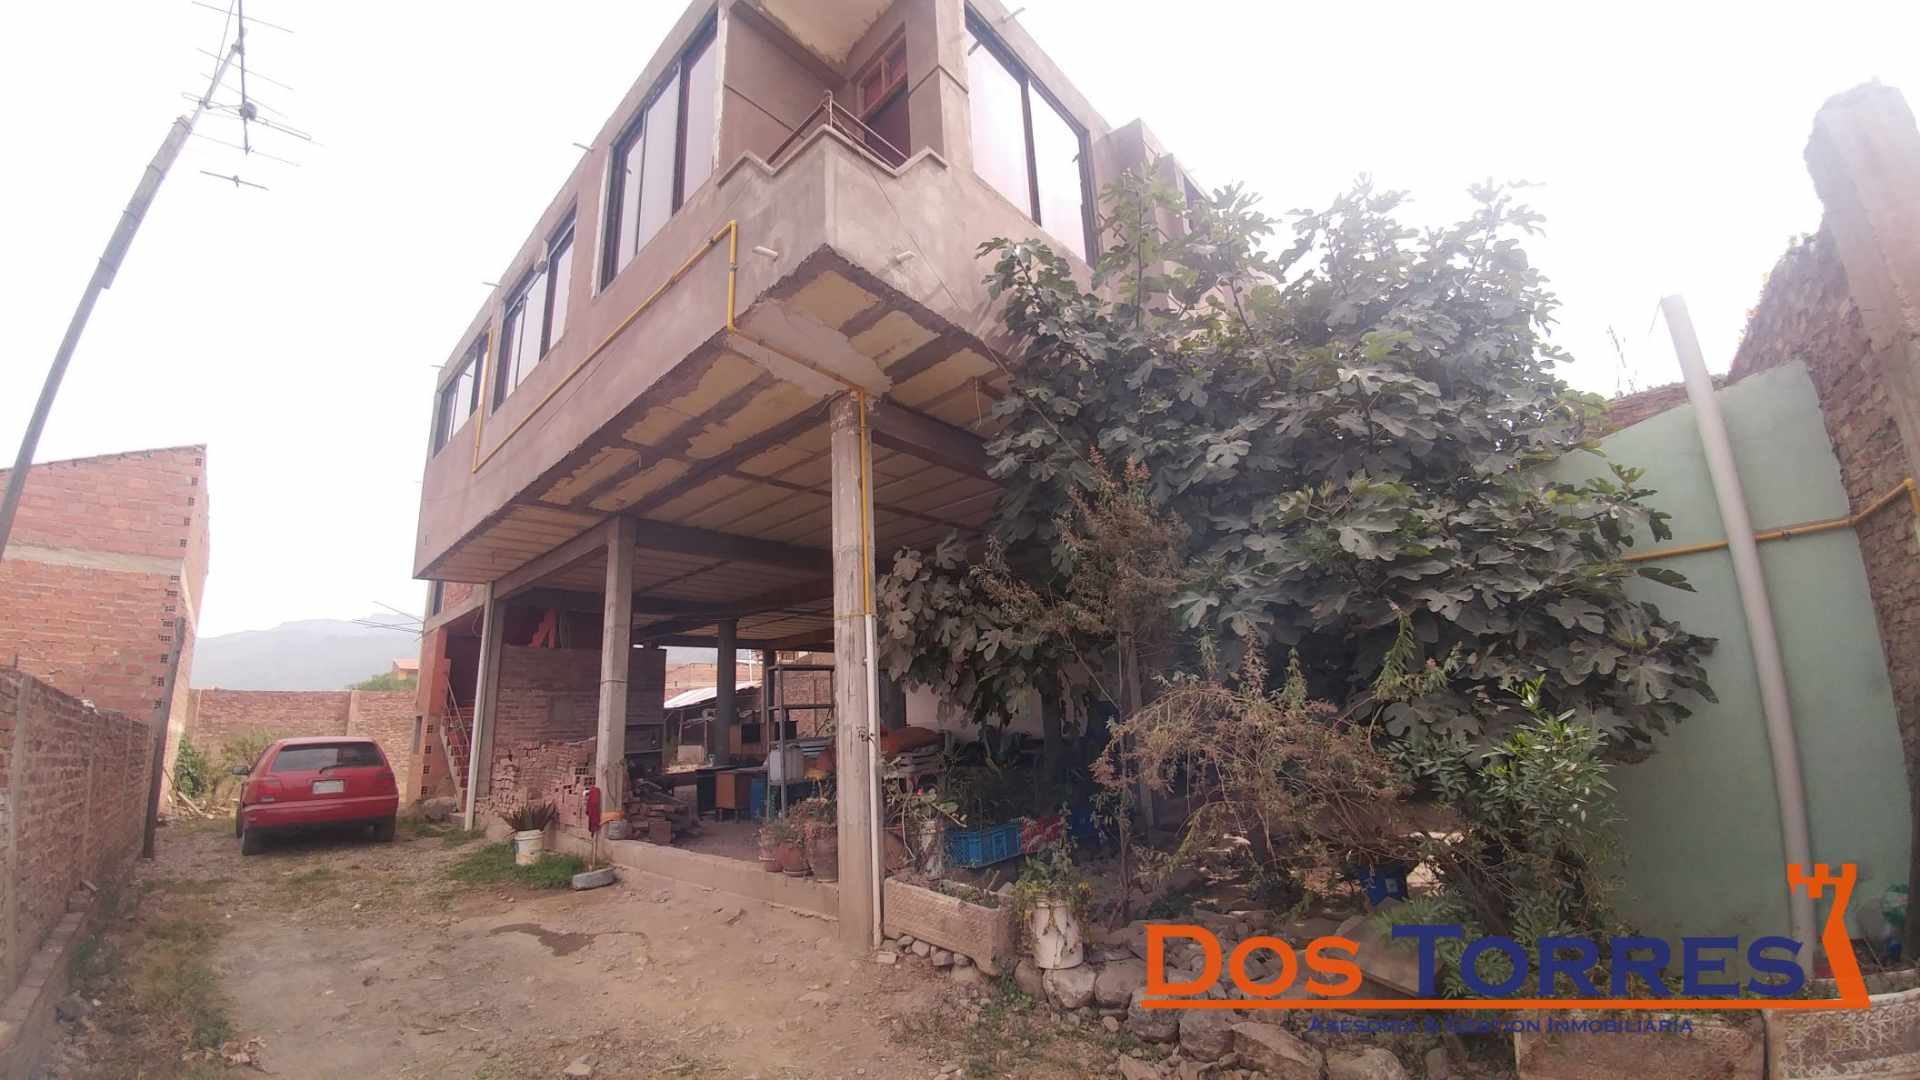 Casa en Venta137.000$us Chillimarca casa en venta con 5 Dormitorios - Ref. 910 Foto 1